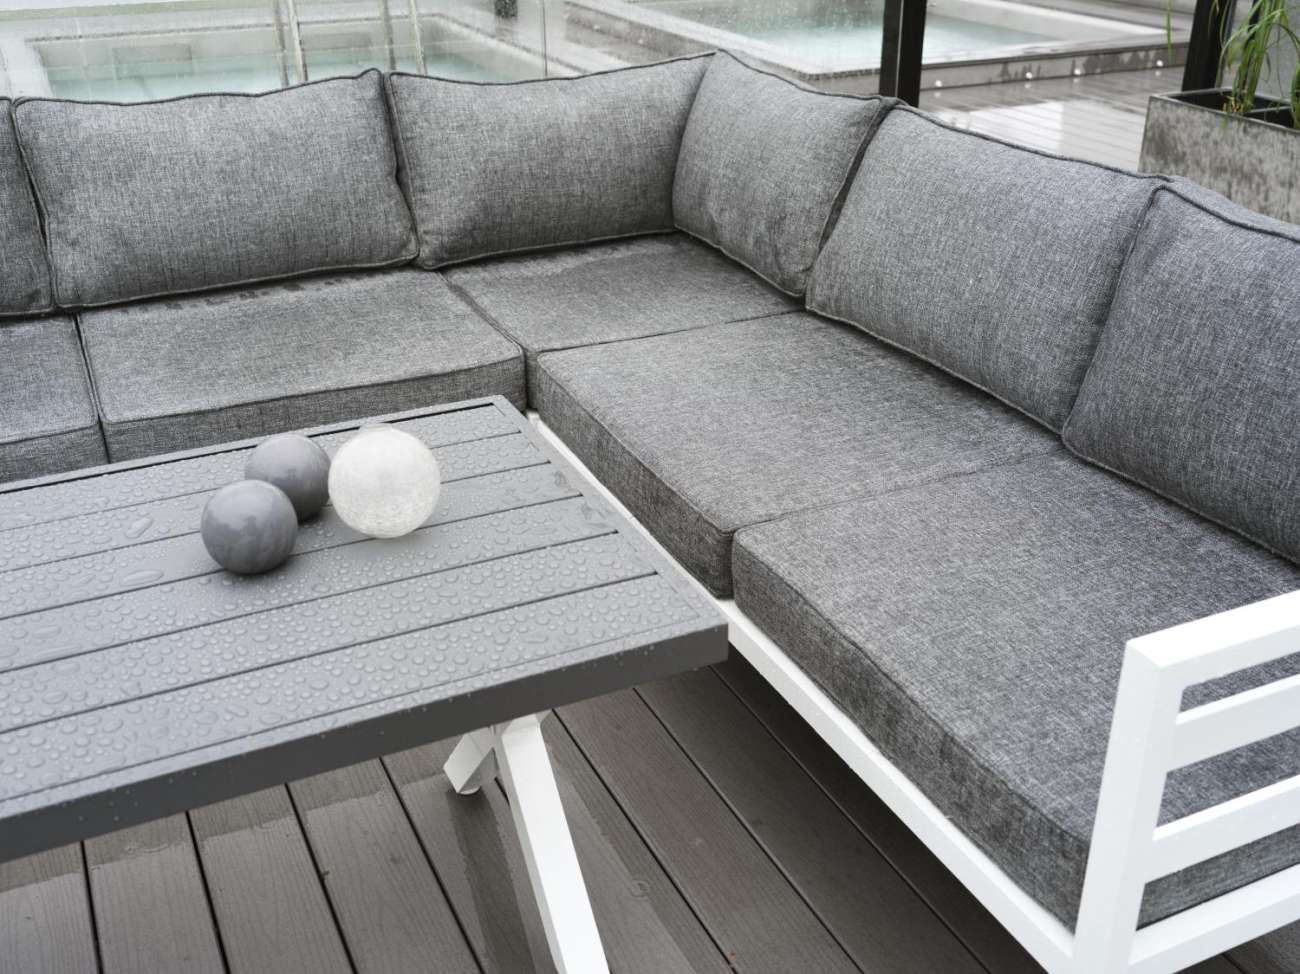 Das Gartenecksofa Weldon überzeugt mit seinem modernen Design. Gefertigt wurde er aus Stoff, welcher einen dunkelgrauen Farbton besitzt. Das Gestell ist aus Metall und hat eine weiße Farbe. Die Sitzhöhe des Sofas beträgt 43 cm.